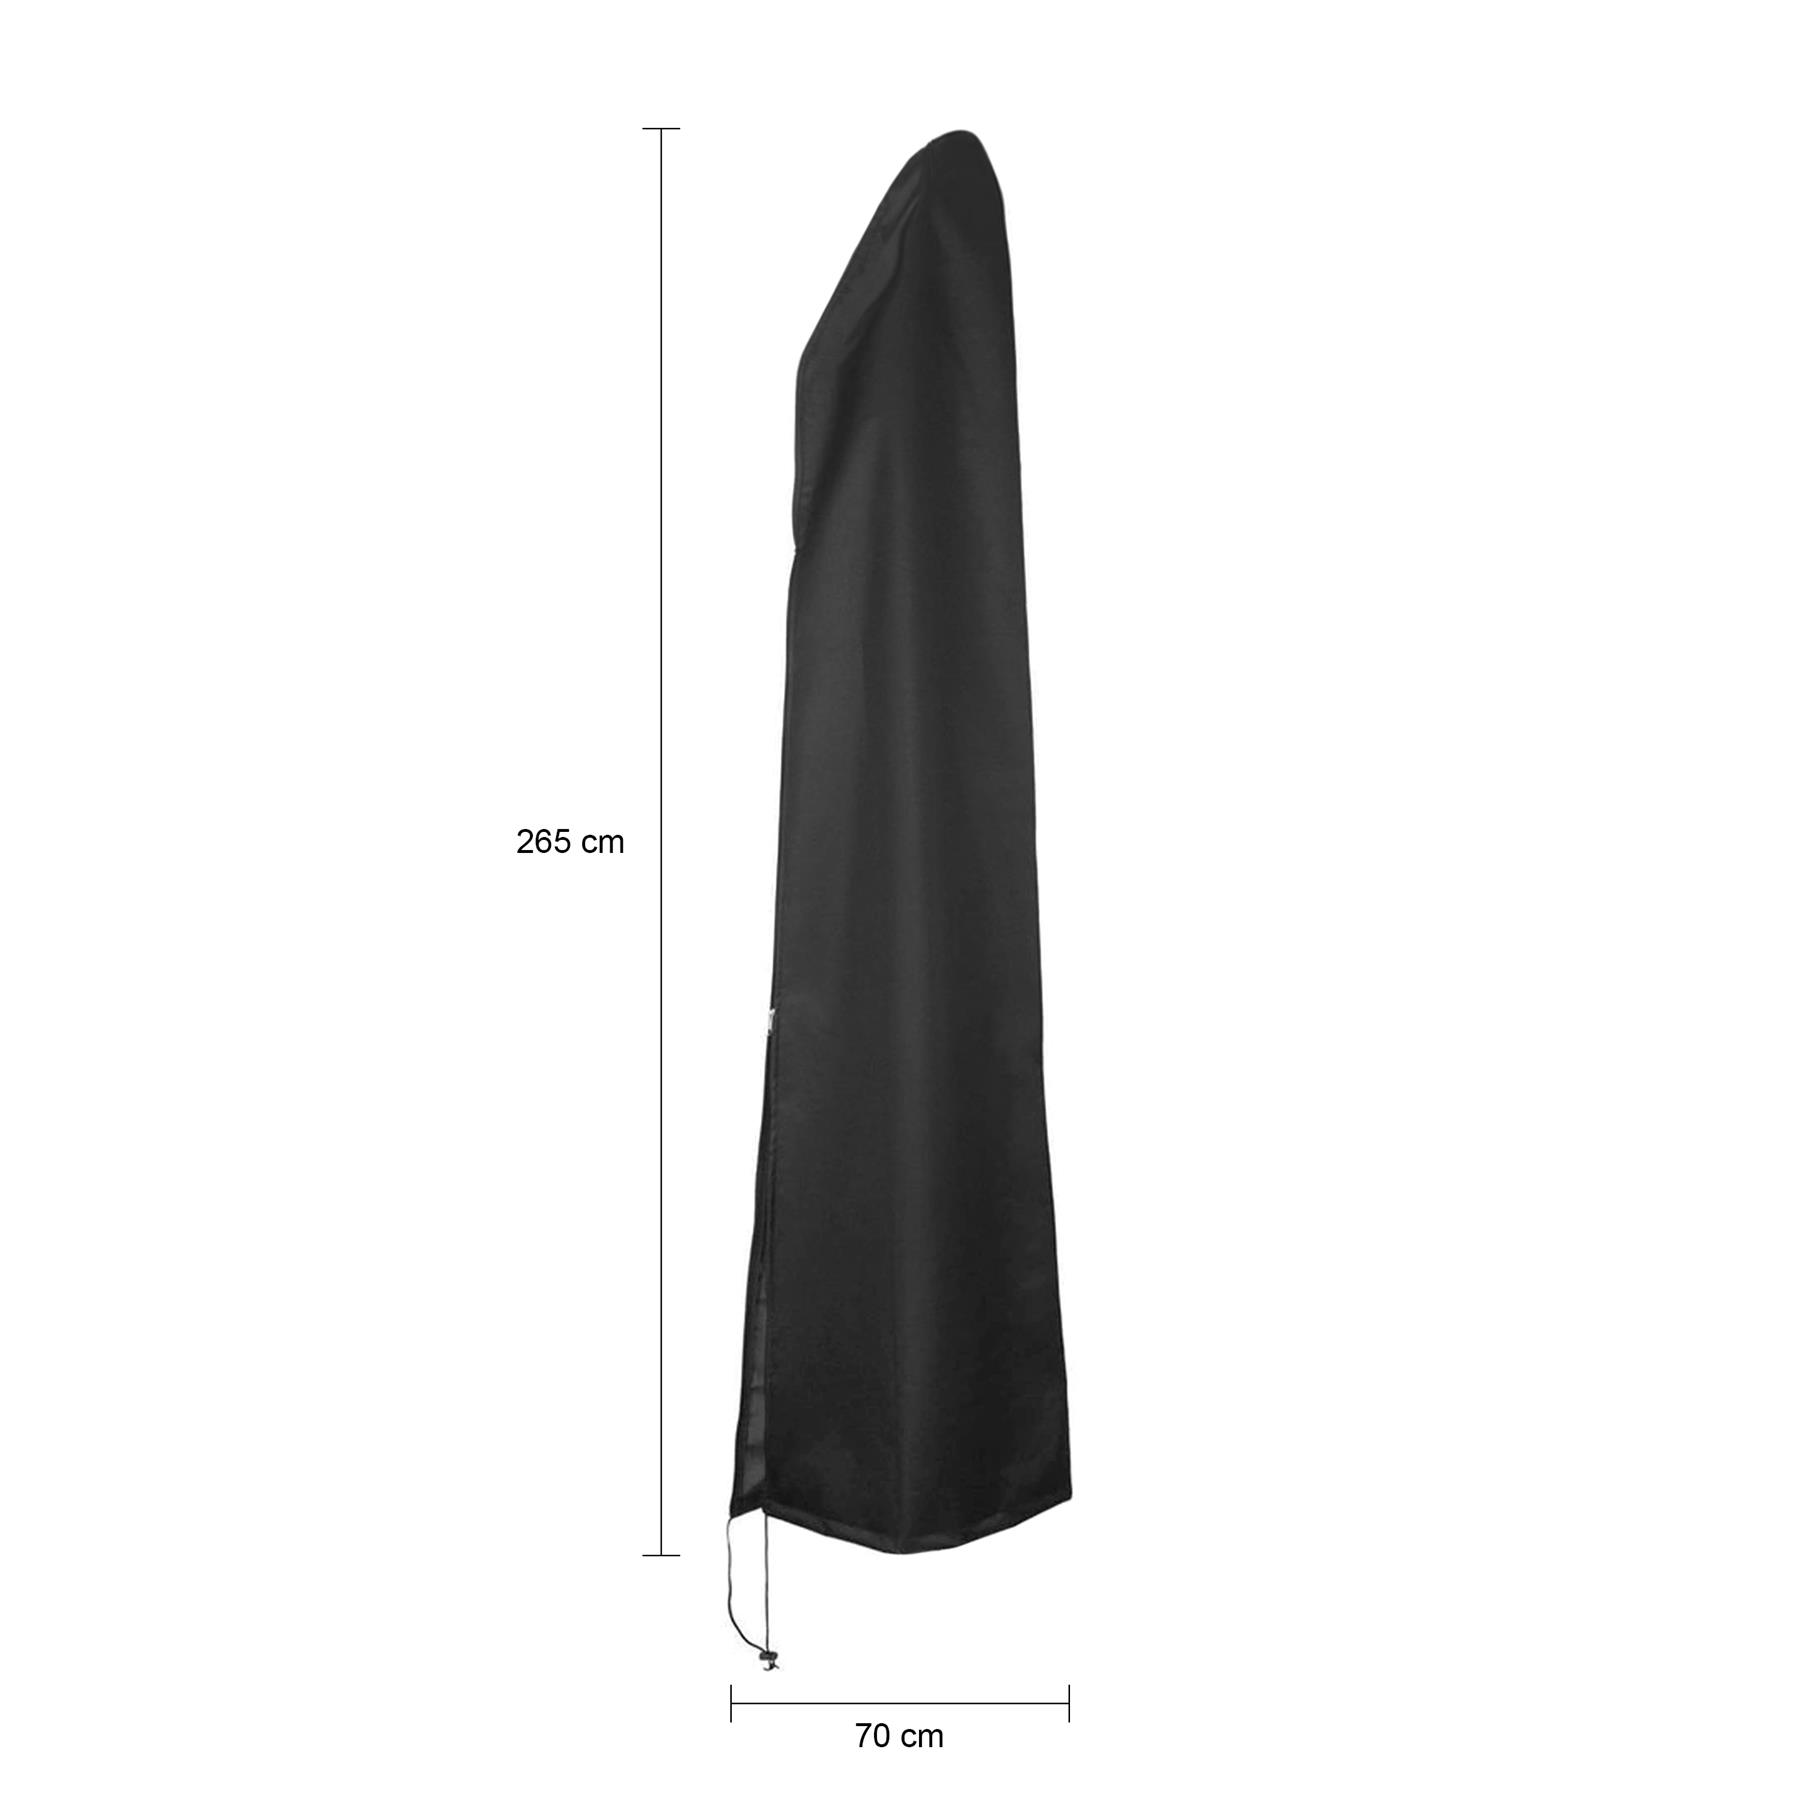 QUVIO Parasol - 265 cm - Waterdicht - Zwart kopen? bij vtwonen by